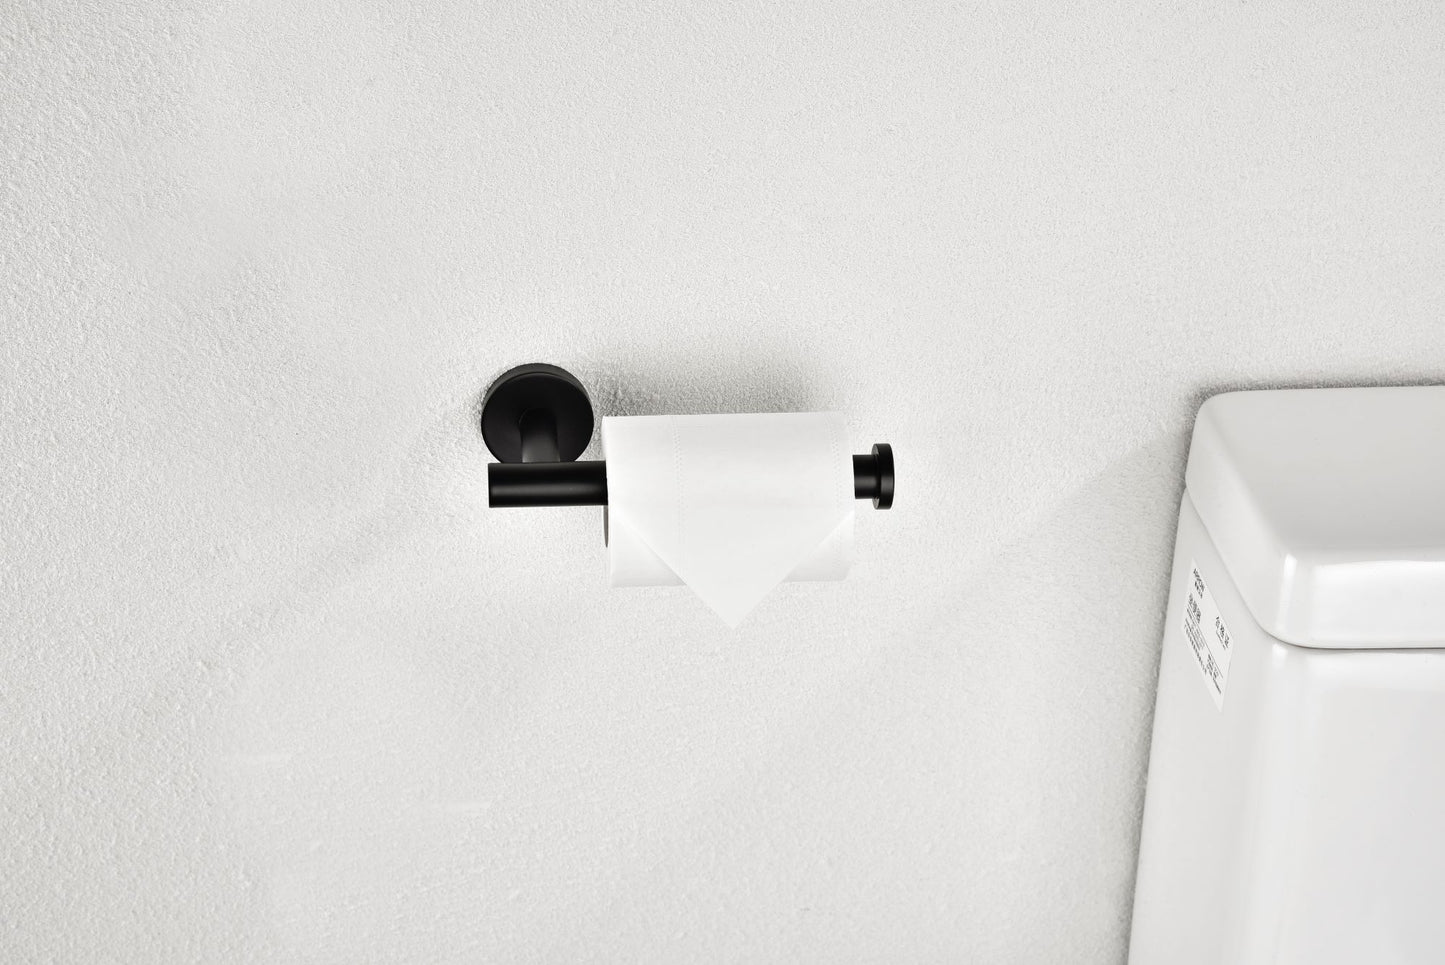 Toilet Paper Holder for Bathroom 2 Pack Tissue Holder Dispenser SUS304 Stainless Steel RUSTPROOF Toilet Roll Holder Wall Mount Matte Black